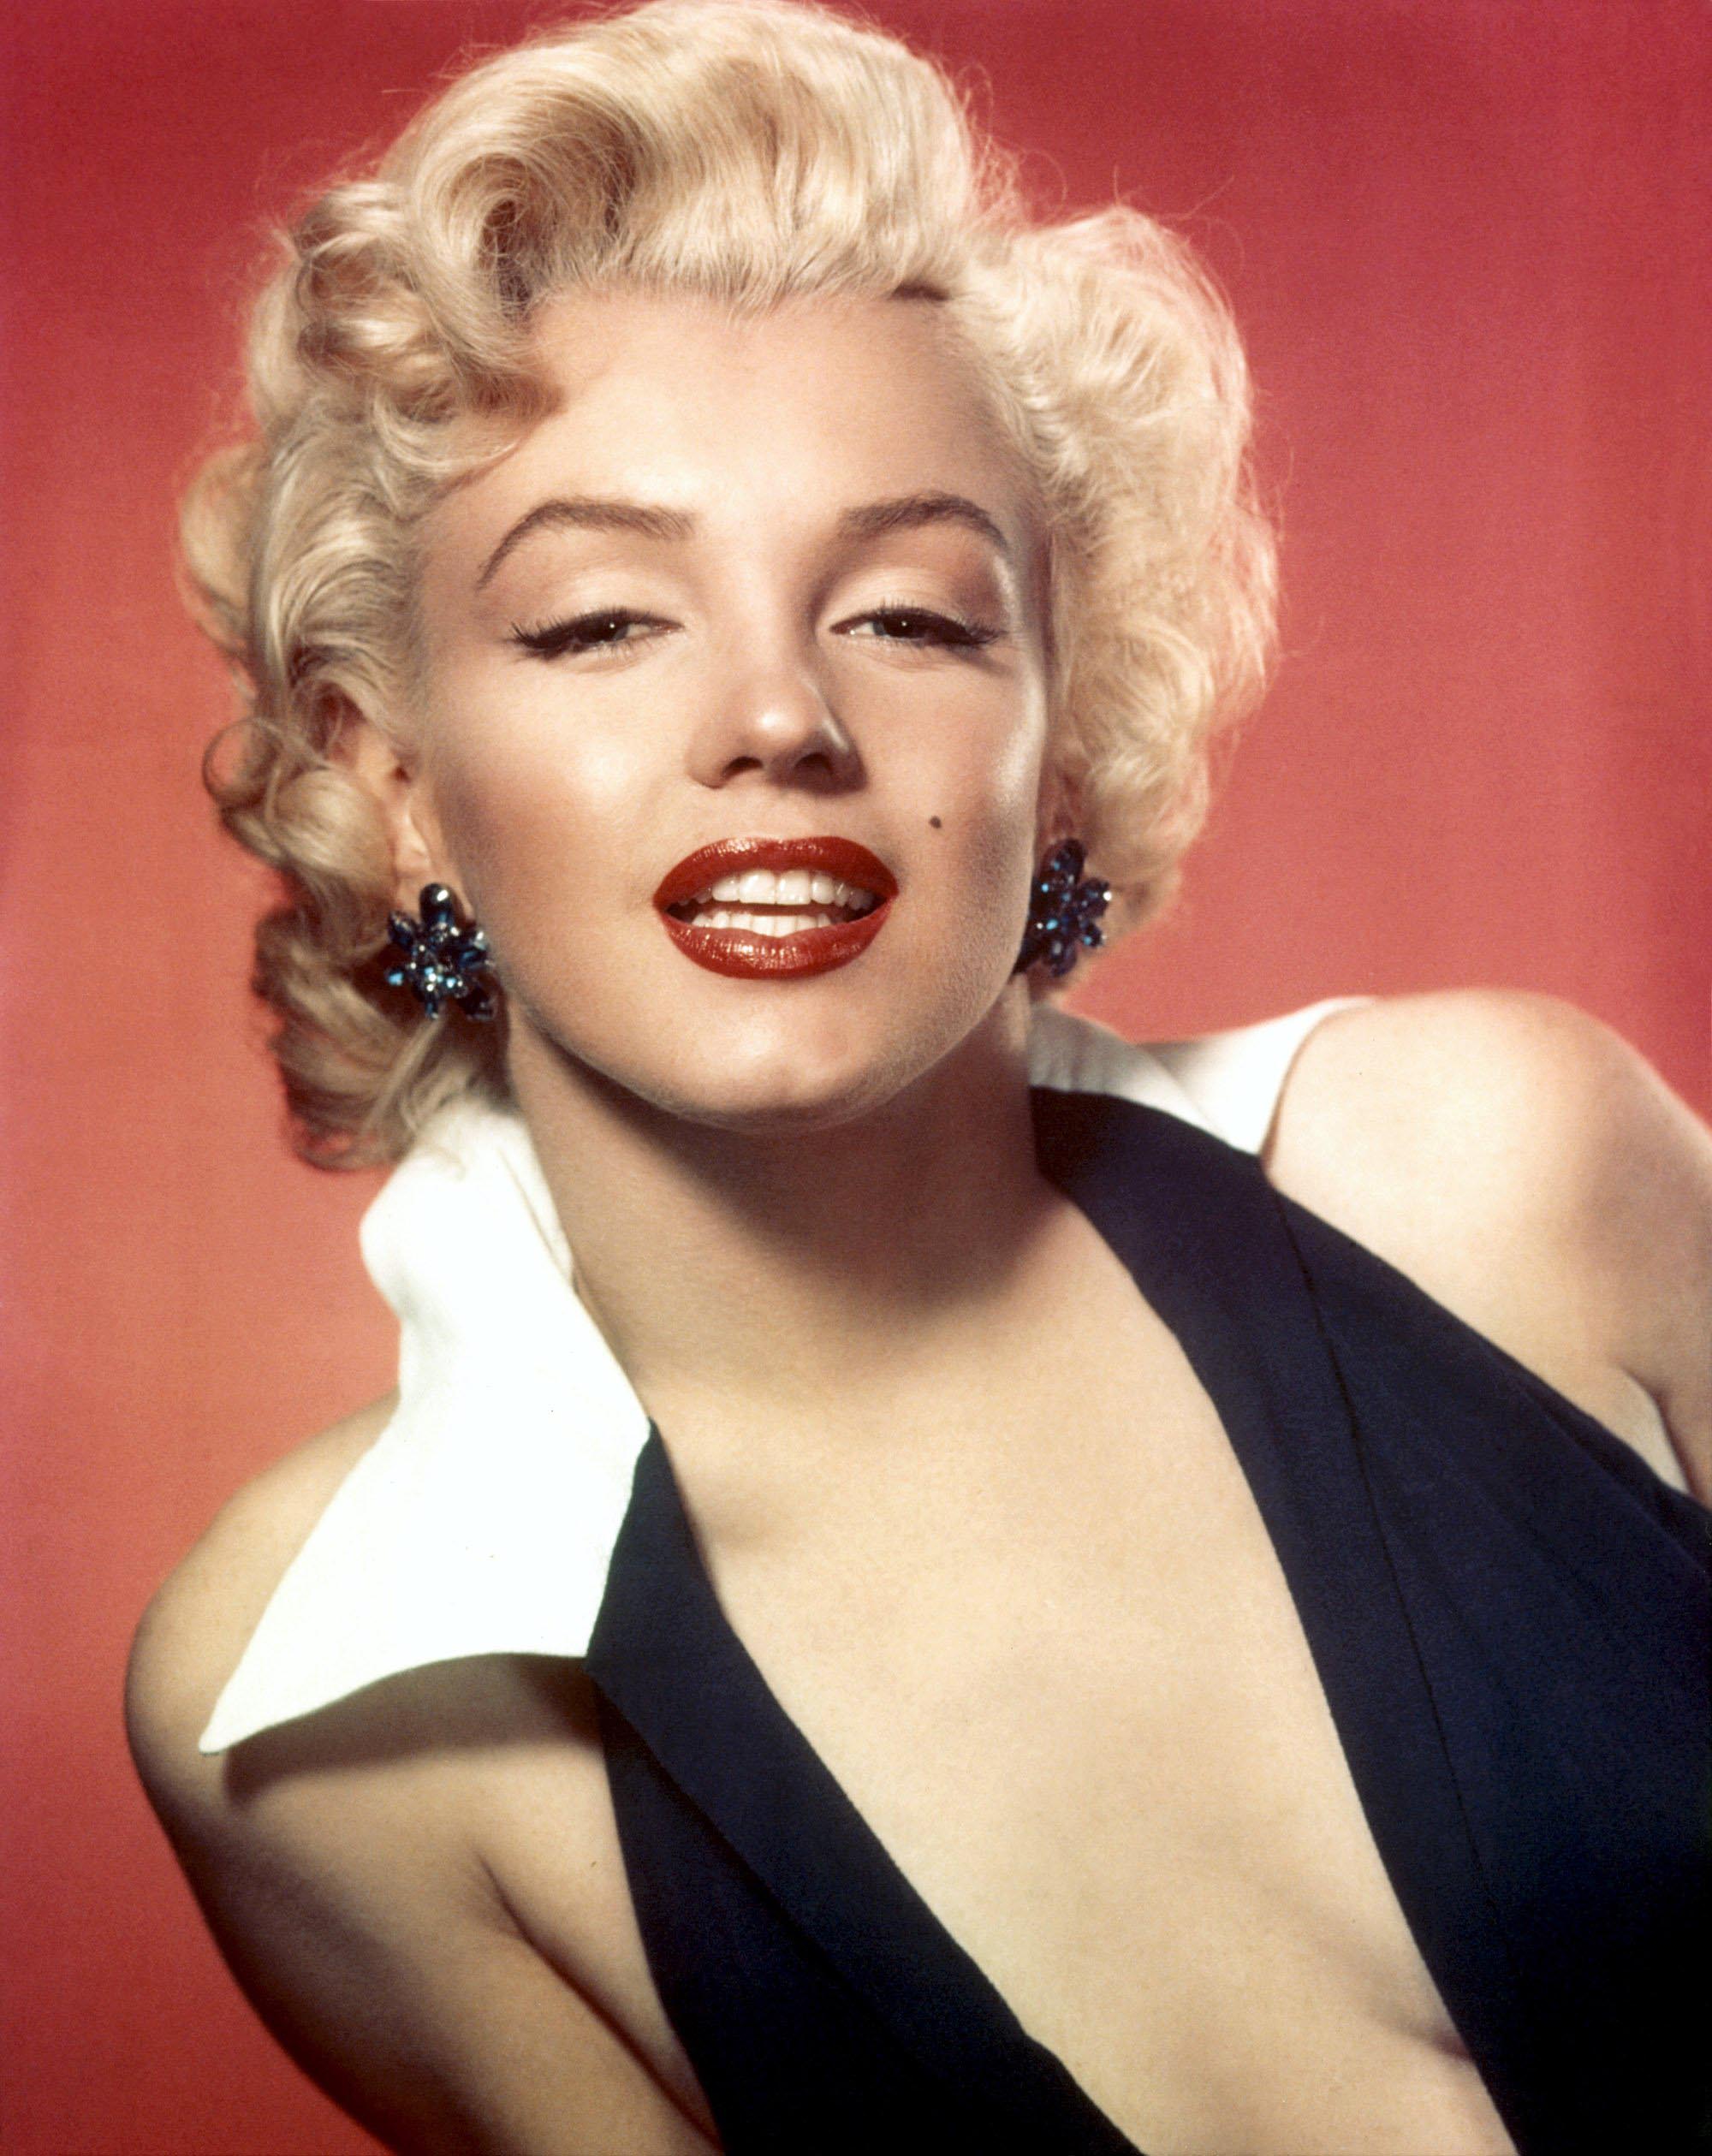 Marilyn notmonroe